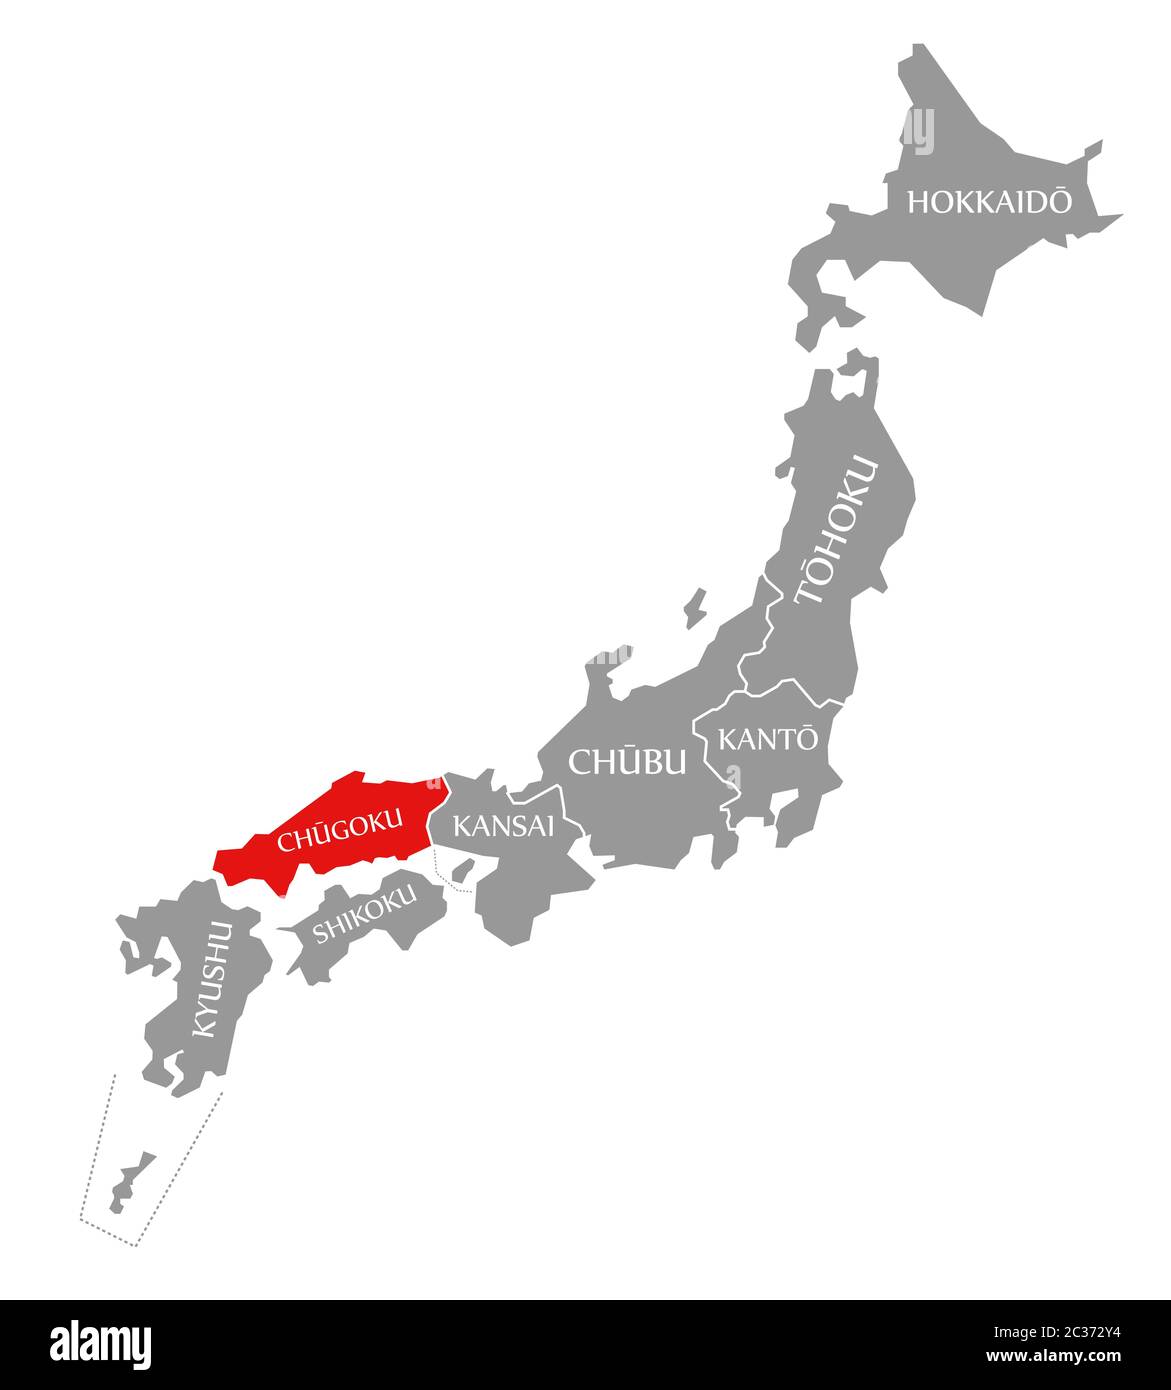 Mis en évidence dans la carte rouge Chugoku du Japon Banque D'Images